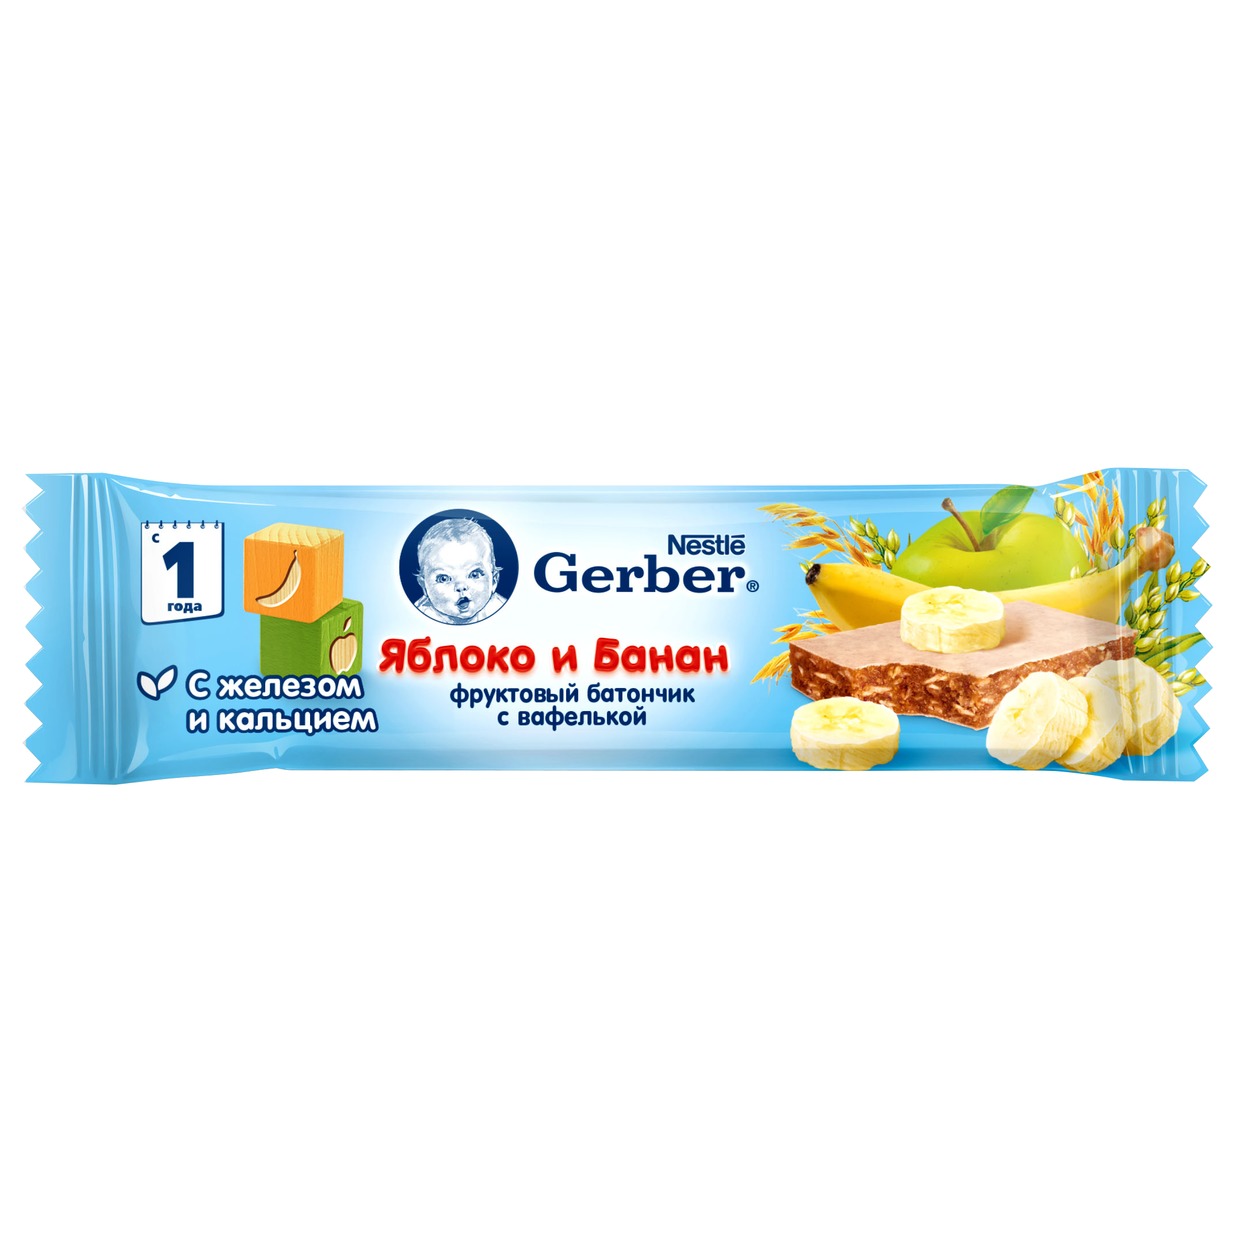 Батончик "Gerber" Яблоко и Банан фруктовый для детского питания 25г по акции в Пятерочке